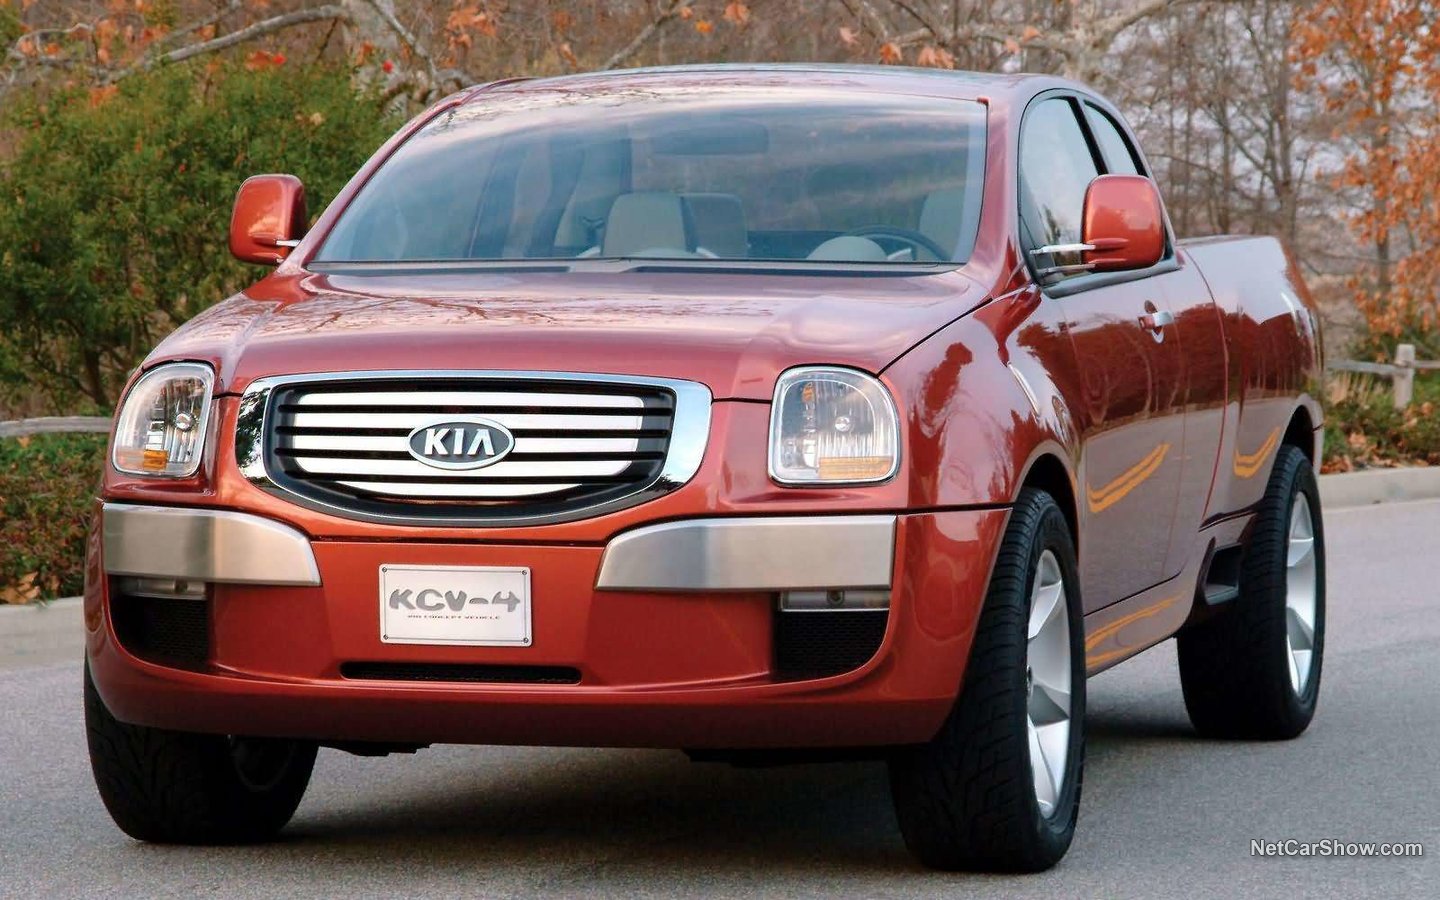 KIA KCV4 Mojava Concept 2004 e43a963d